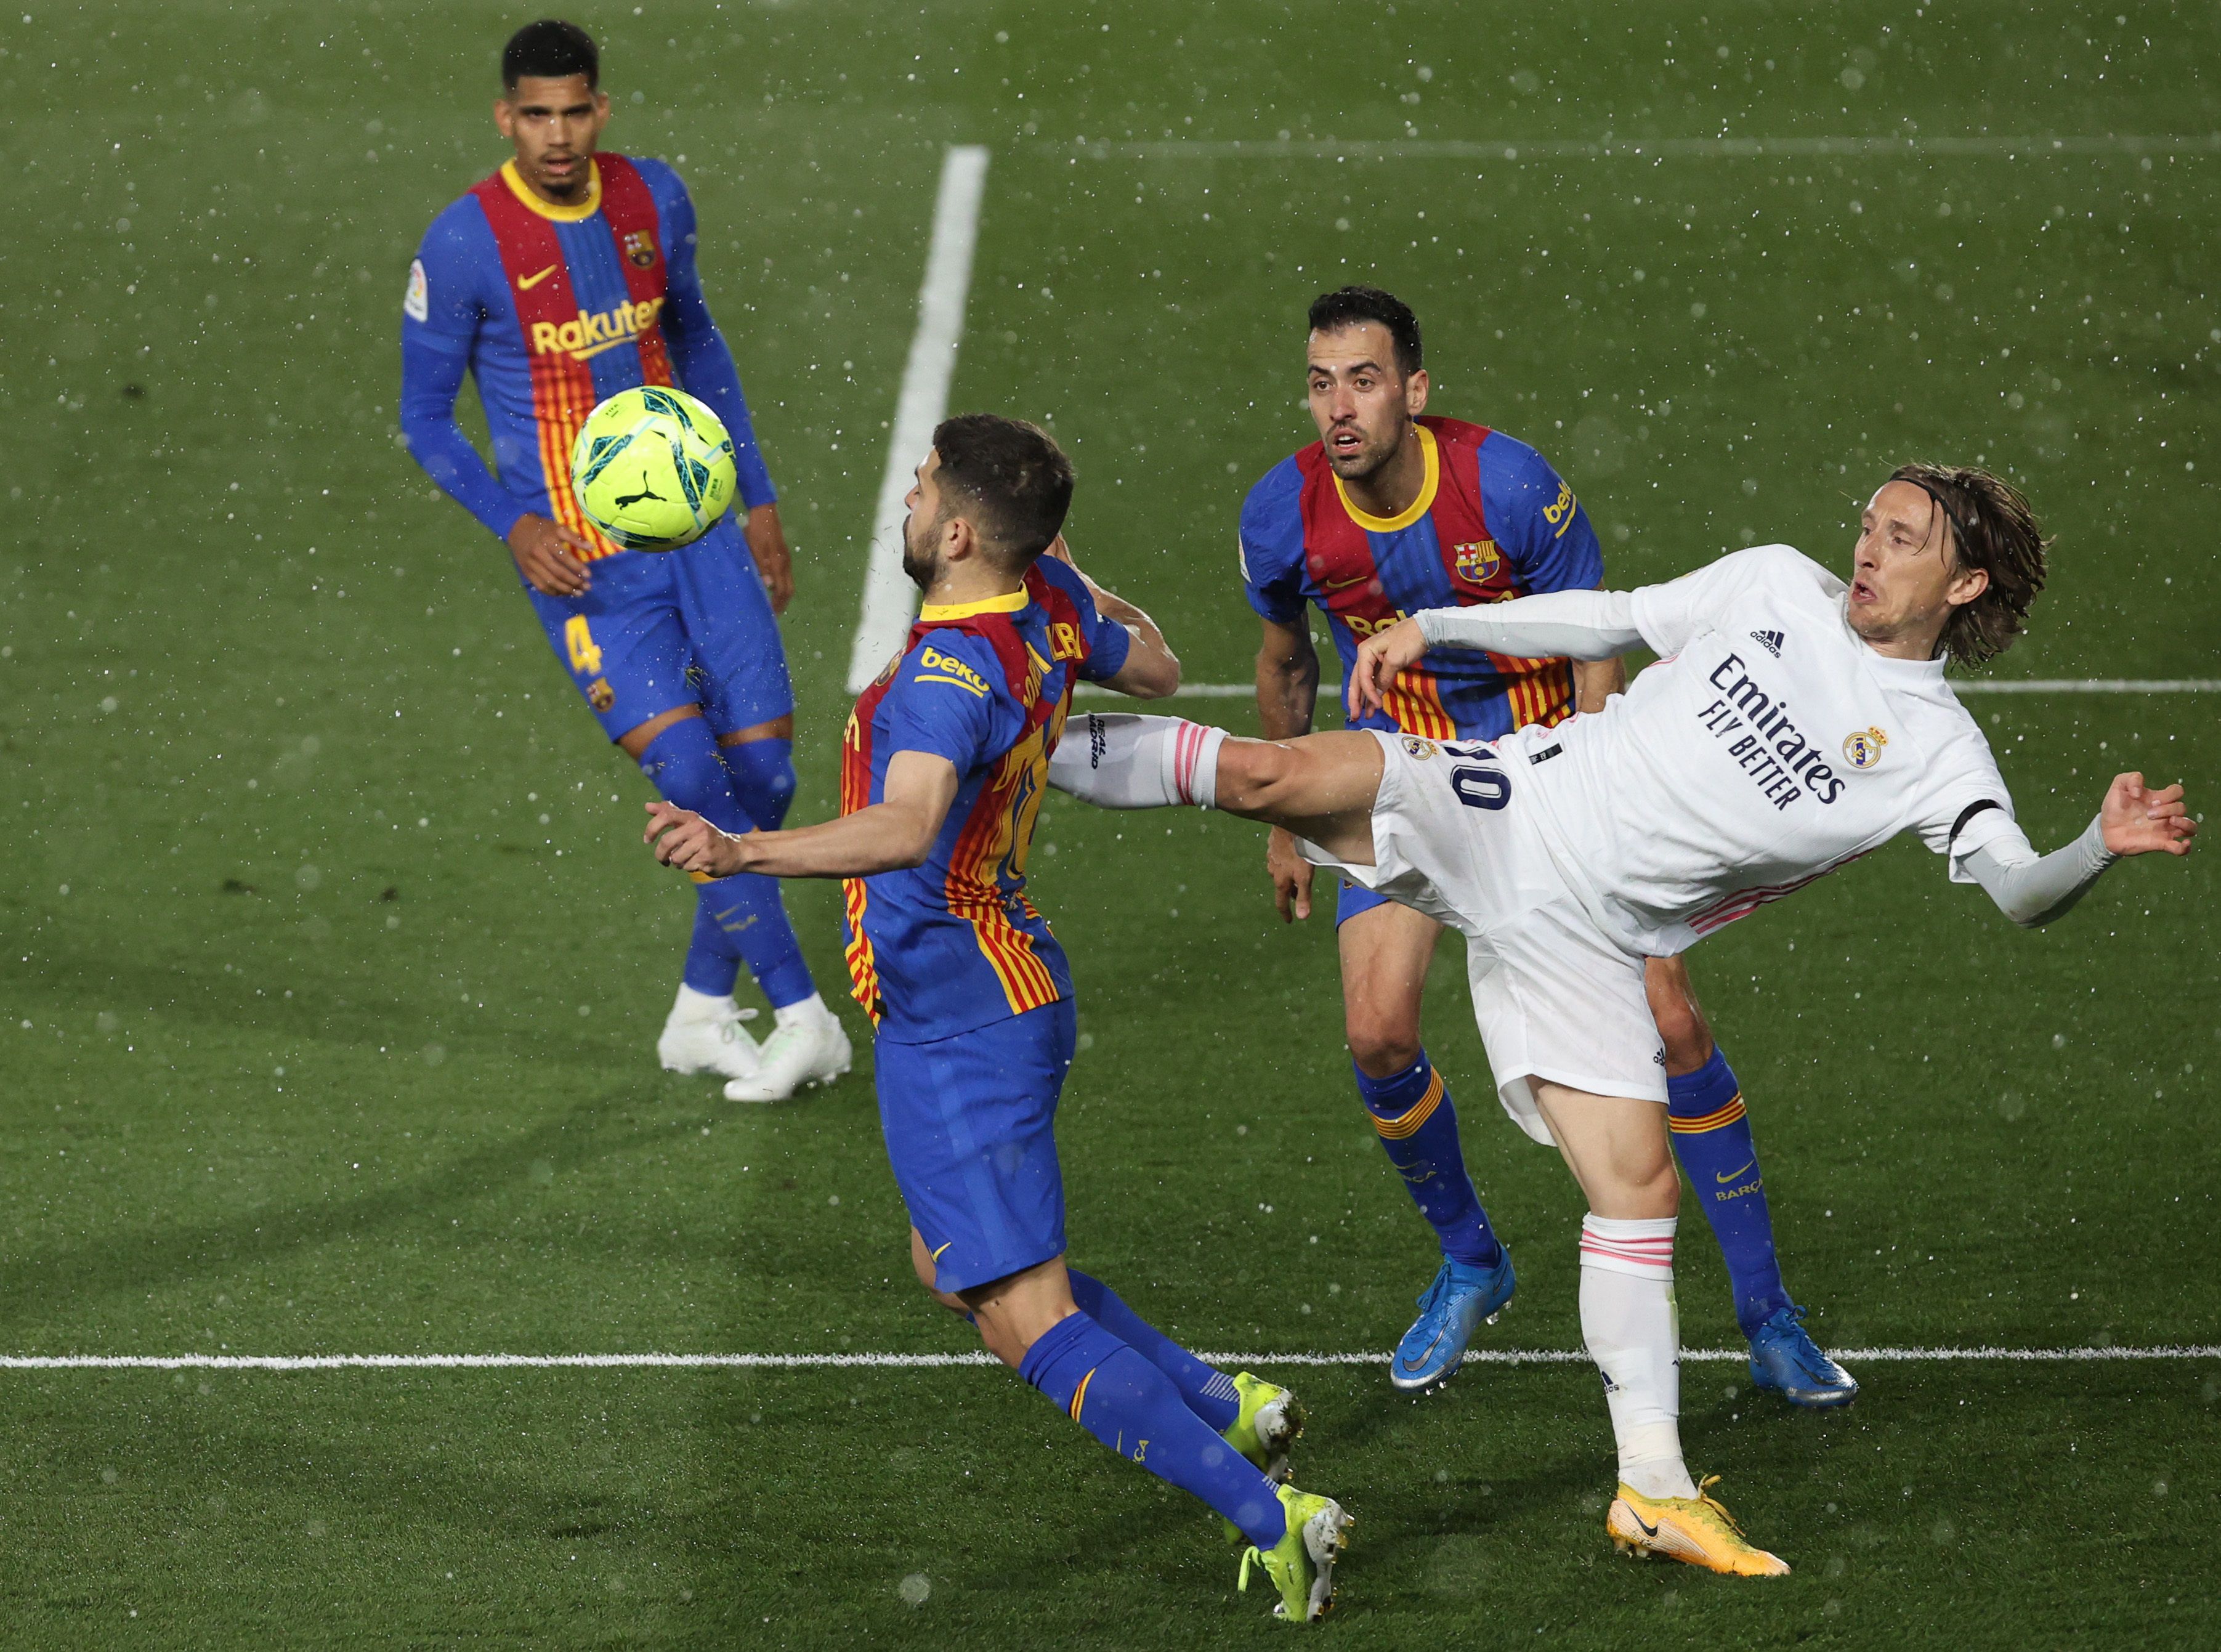 Szakadó esőben vívott óriási csatát egymással a Real Madrid és a Barcelona. / Fotó: EPA/Juanjo Martin.